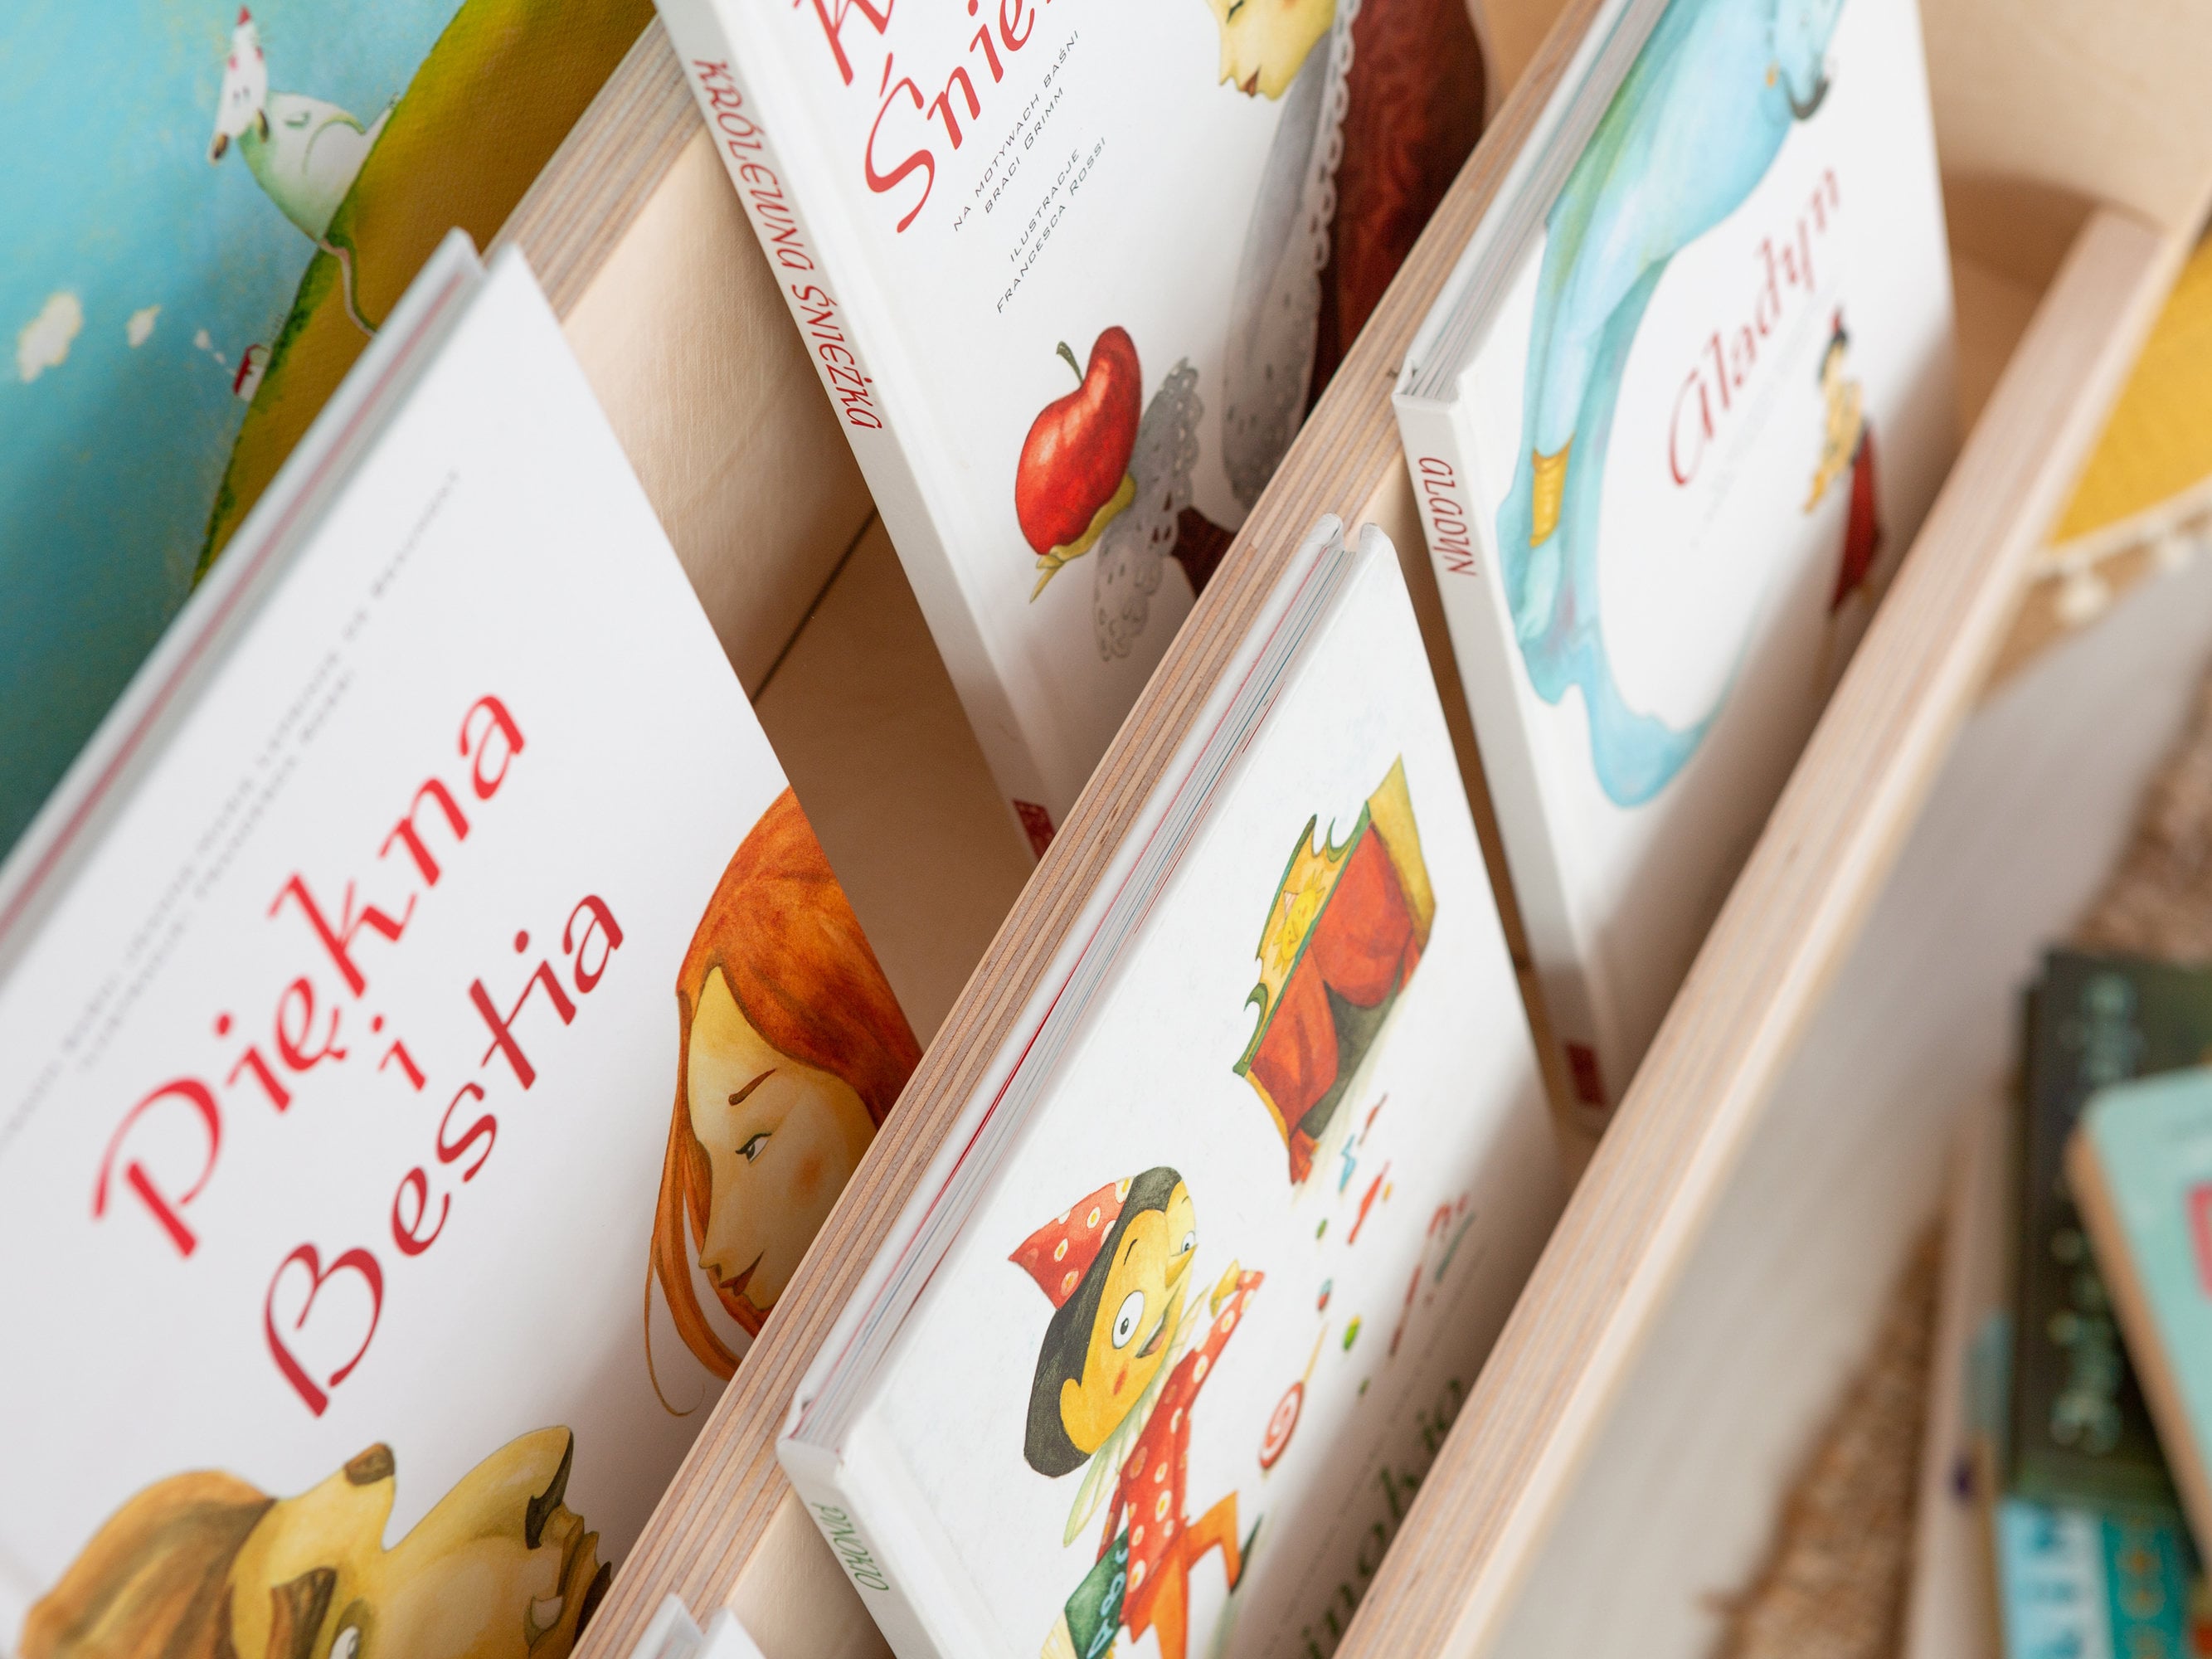 Estantería Montessori 4 baldas 🧡 Estantería Infantil Pared 🧡 Estanterias  Montessori - Estanterías para libros- Estanterías infantiles - Estanterías  personalizadas - Juguetines